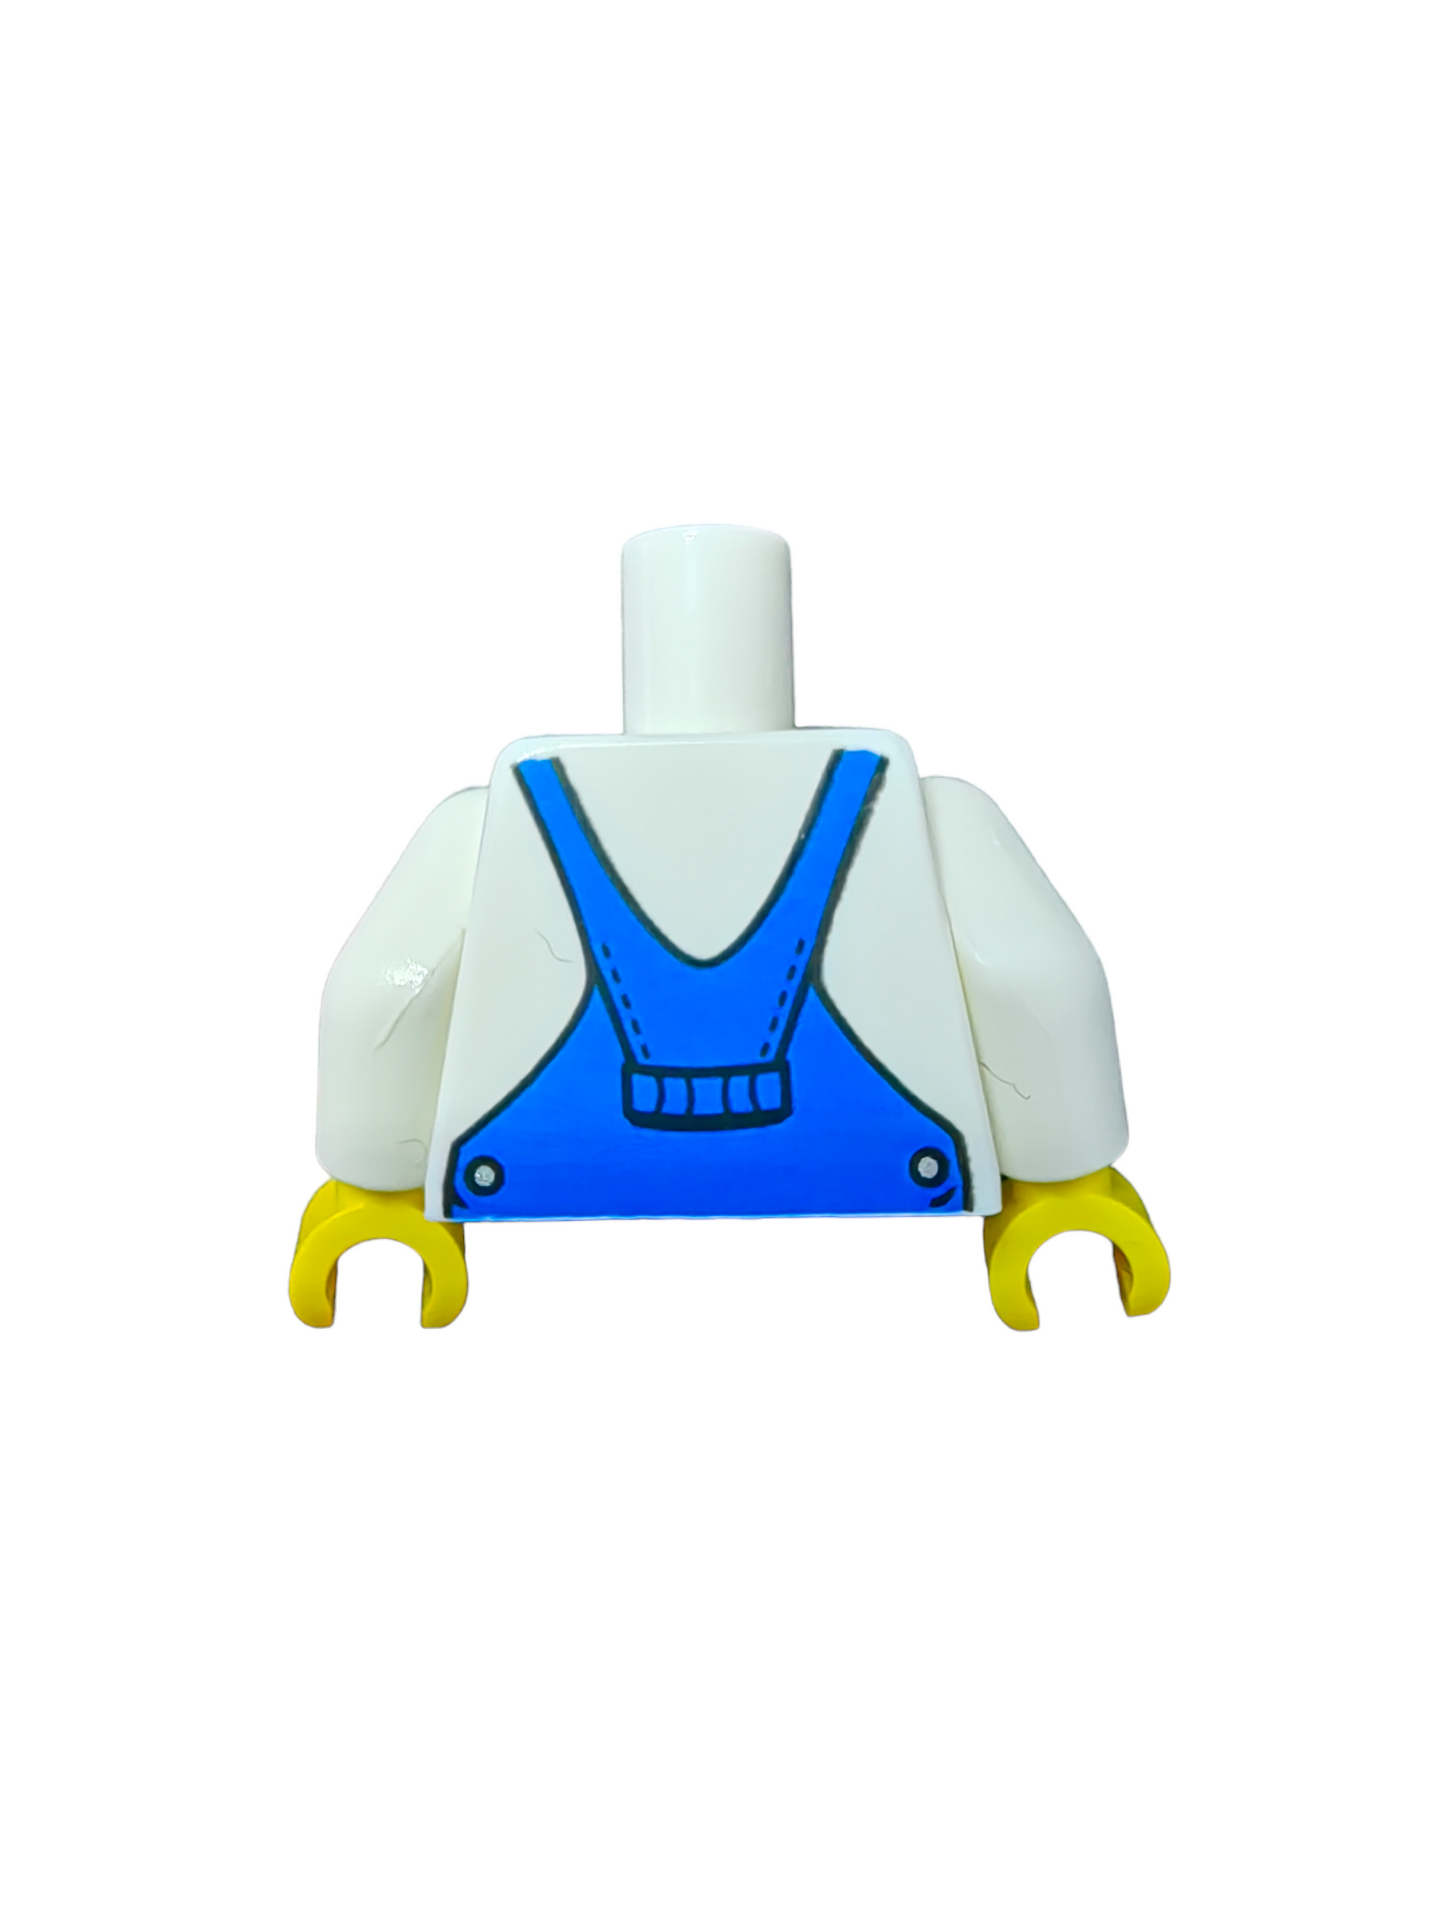 LEGO Torso, White V-Neck Shirt with Blue Overalls - UB1125